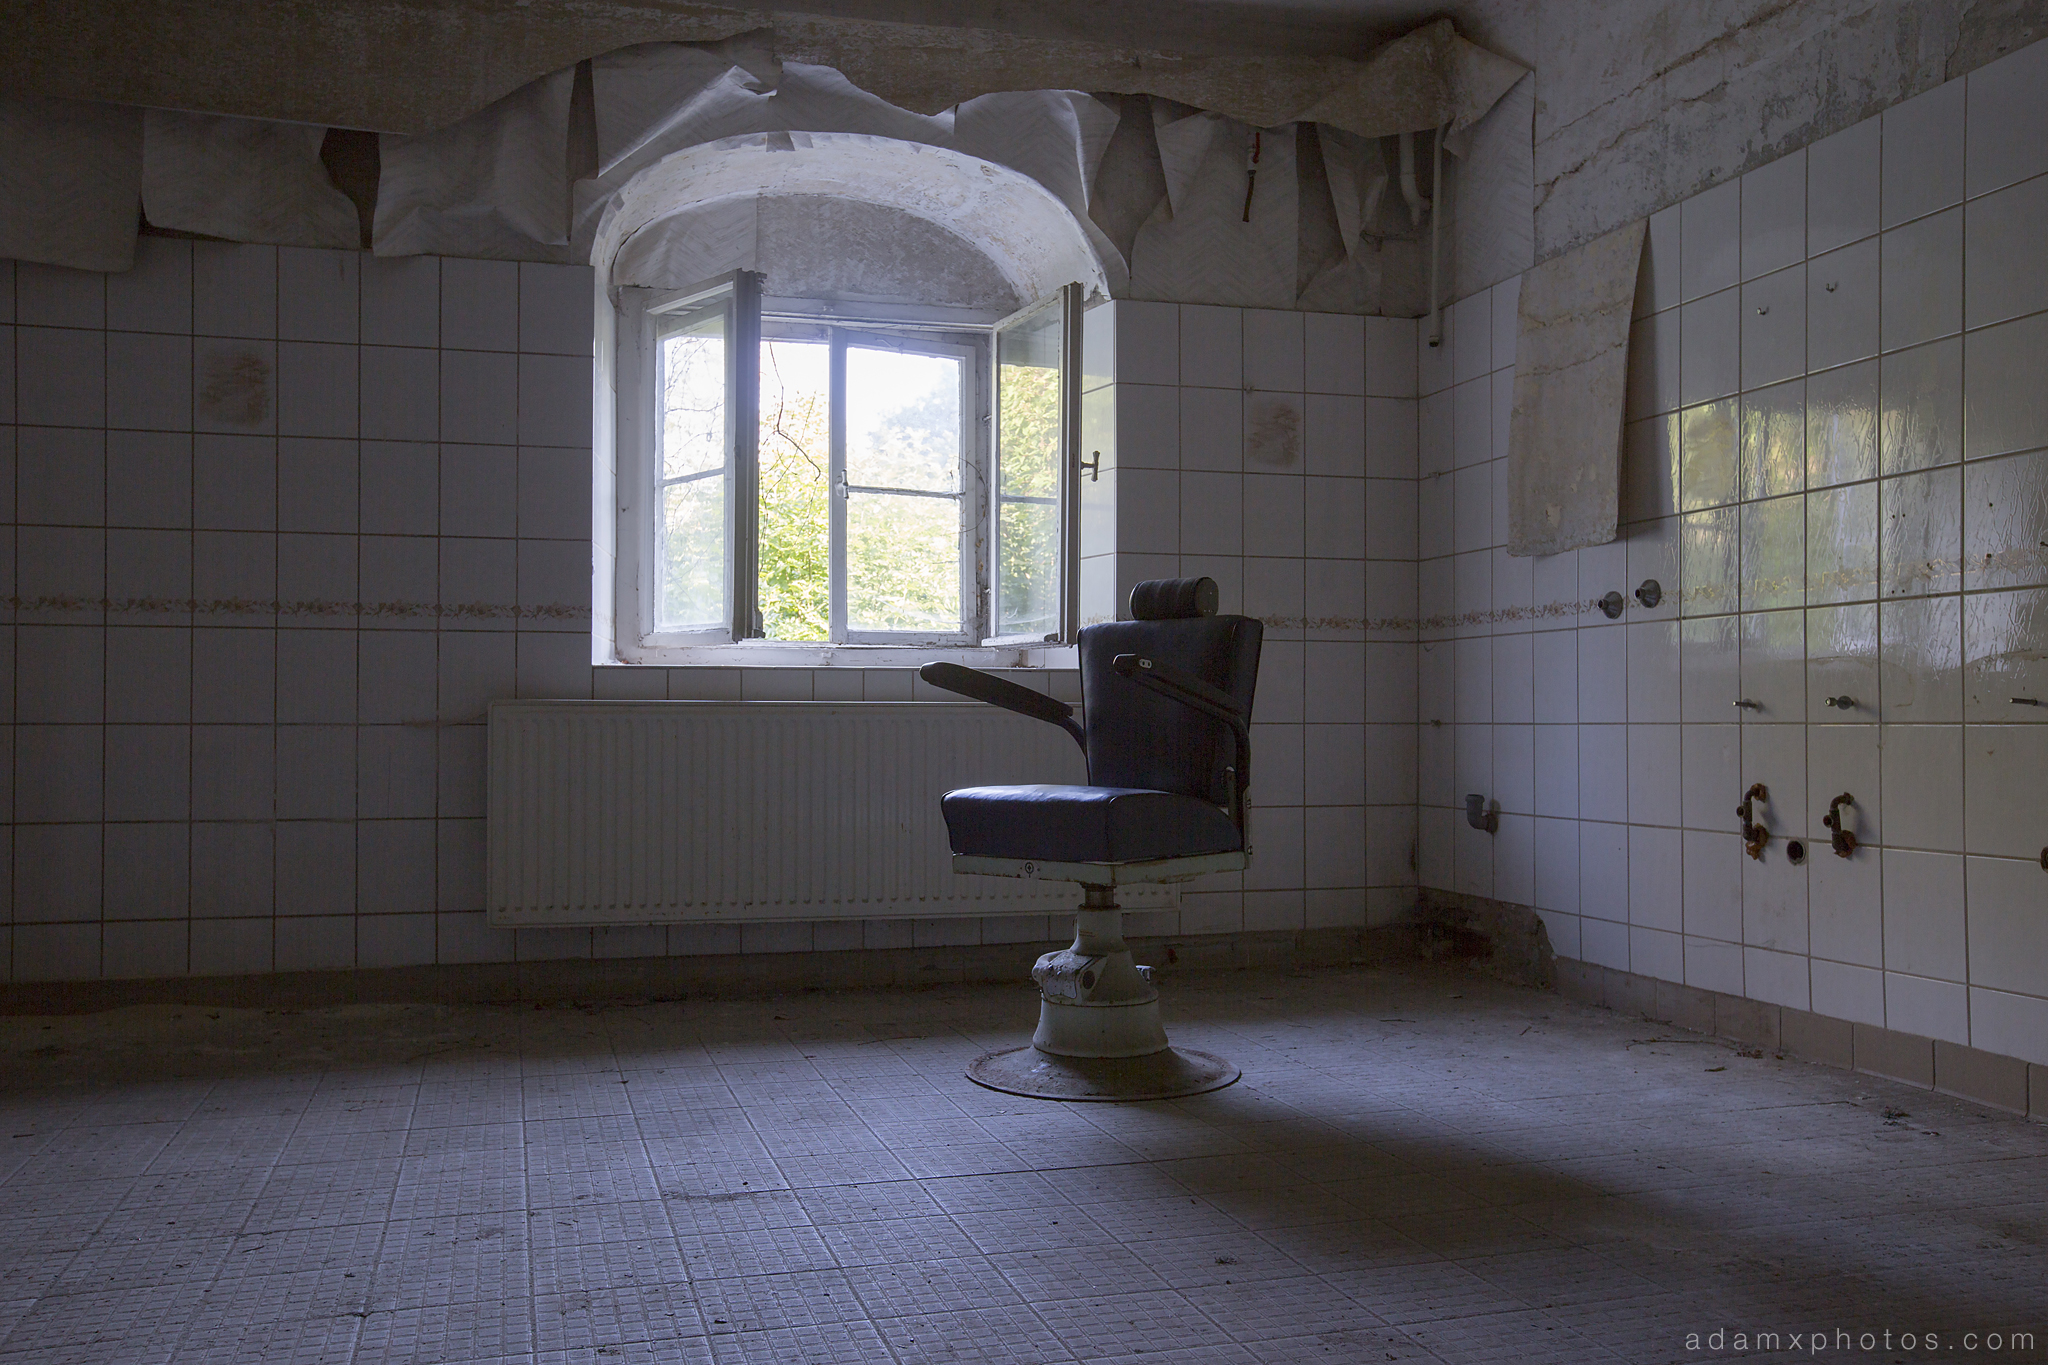 Adam X Urbex Krankenhaus von rollstuhlen Hospital of wheelchairs Germany Urban Exploration Decay Lost Abandoned Hidden Wheelchair chair